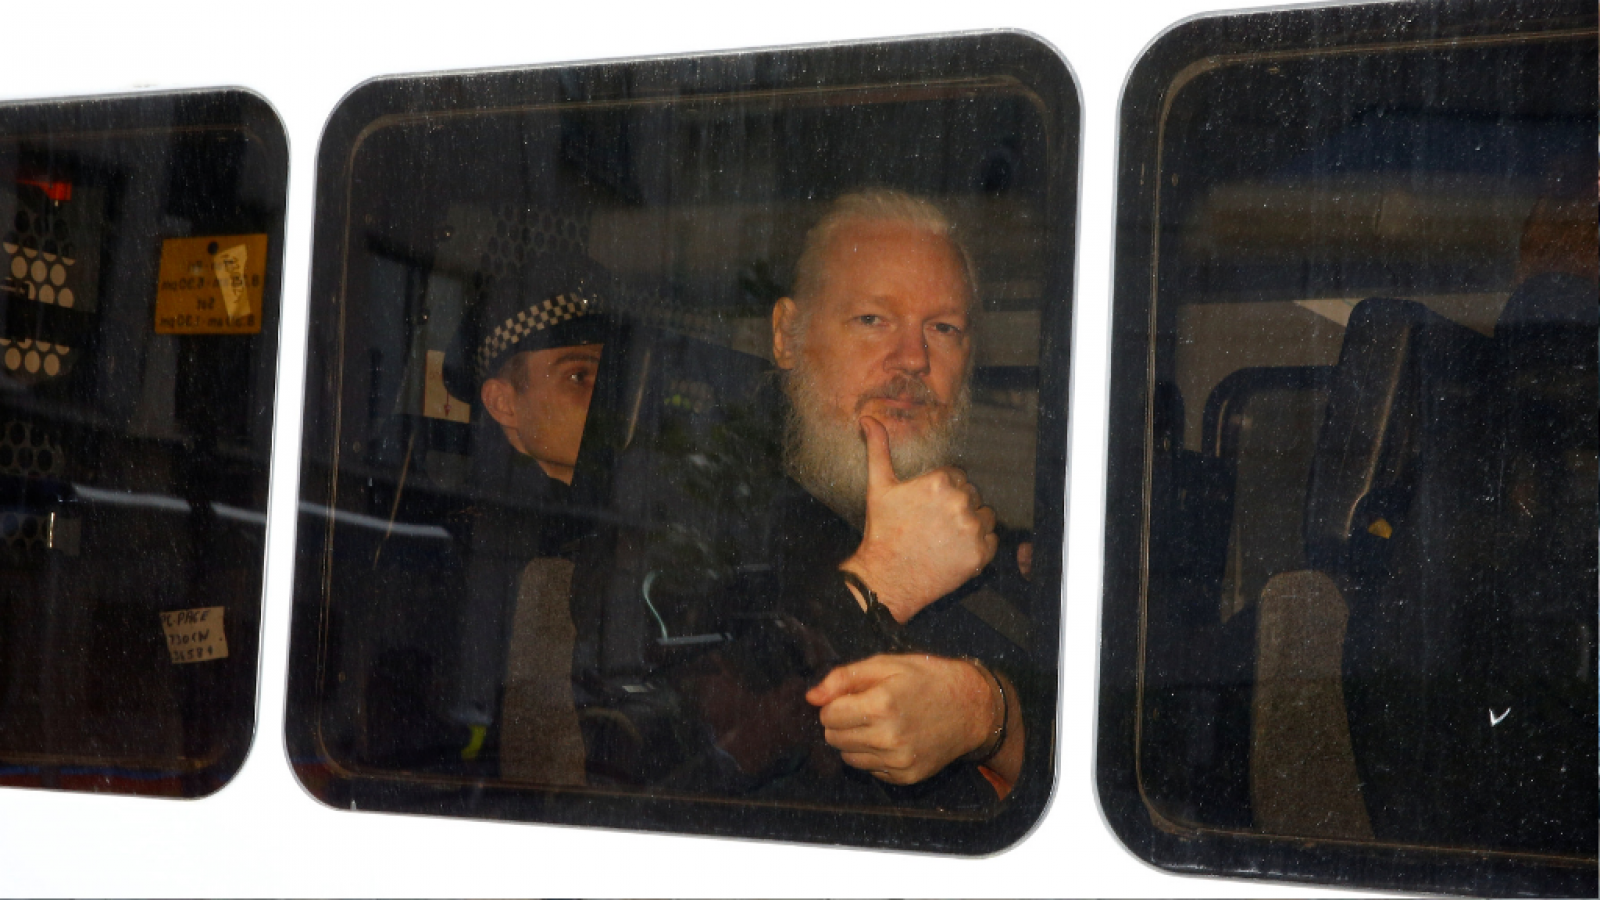 14 horas - Reino Unido detiene a Assange y EE.UU pide la extradición - Escuchar ahora